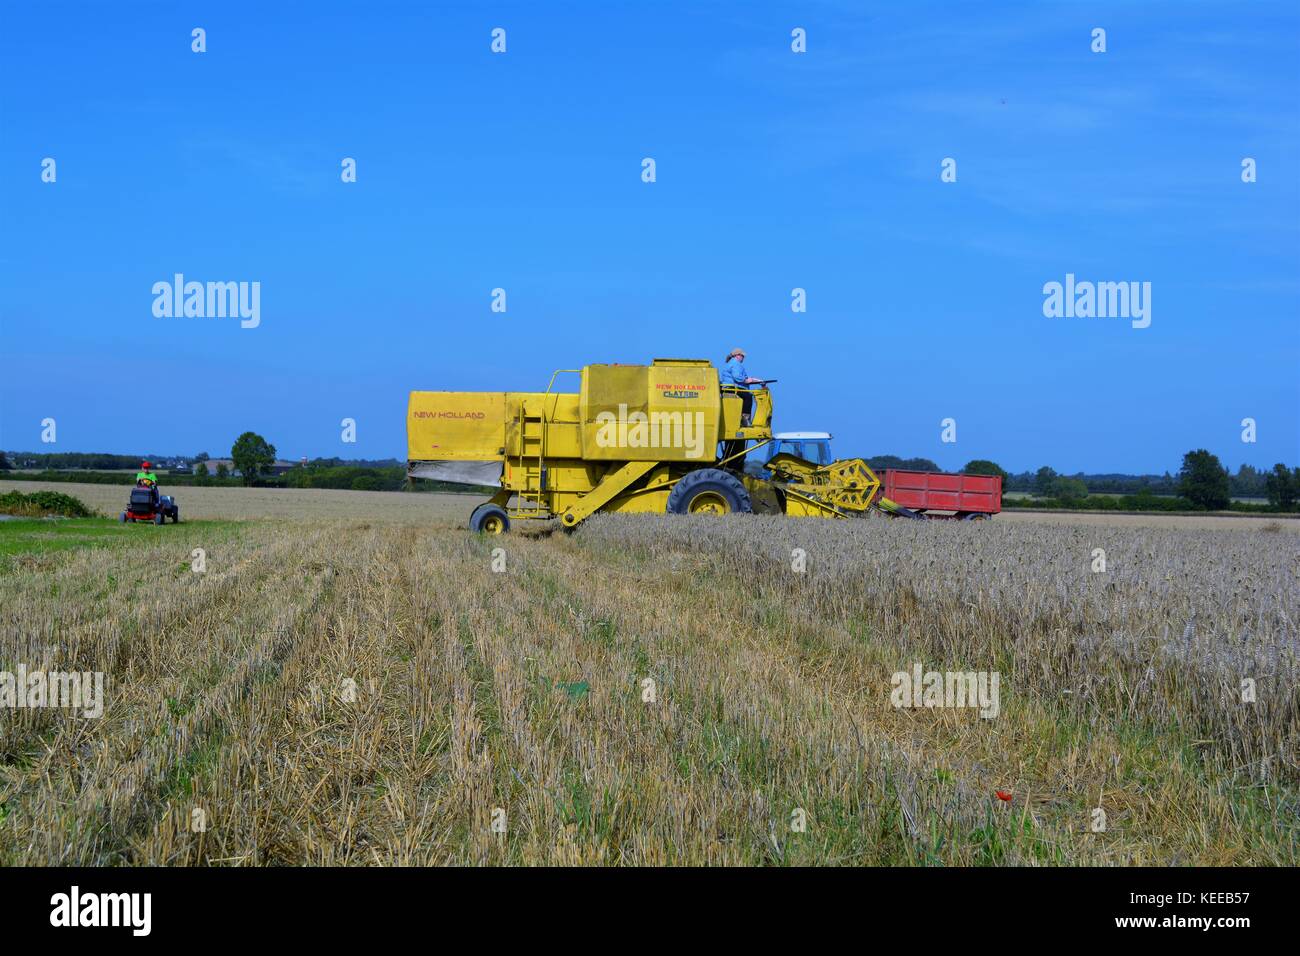 Cabine ouverte ancienne moissonneuse-batteuse new holland jaune de la récolte de cultures d'une exploitation agricole en 2017 Banque D'Images